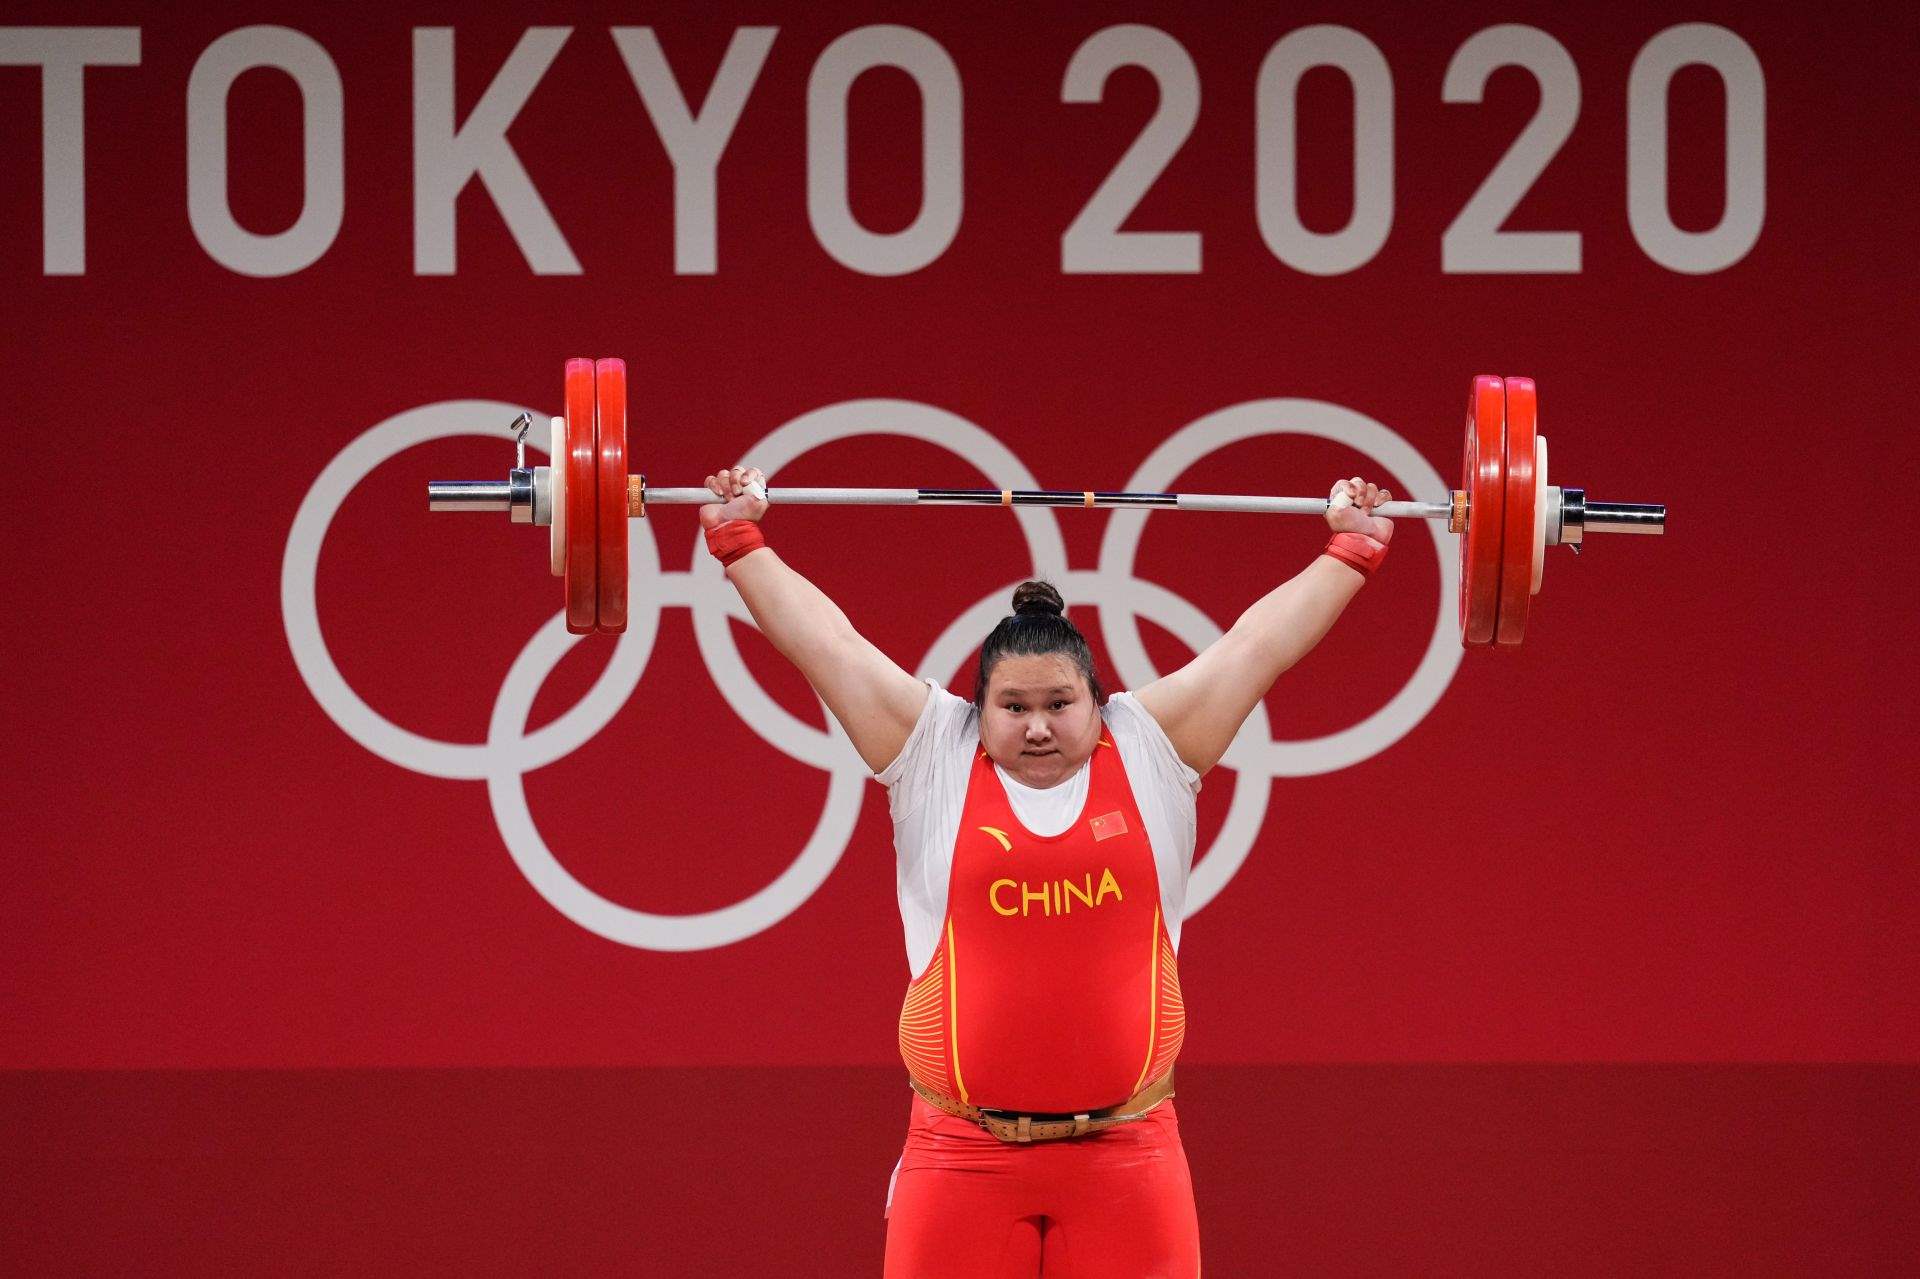 第29金！李雯雯夺得举重女子87公斤以上级金牌